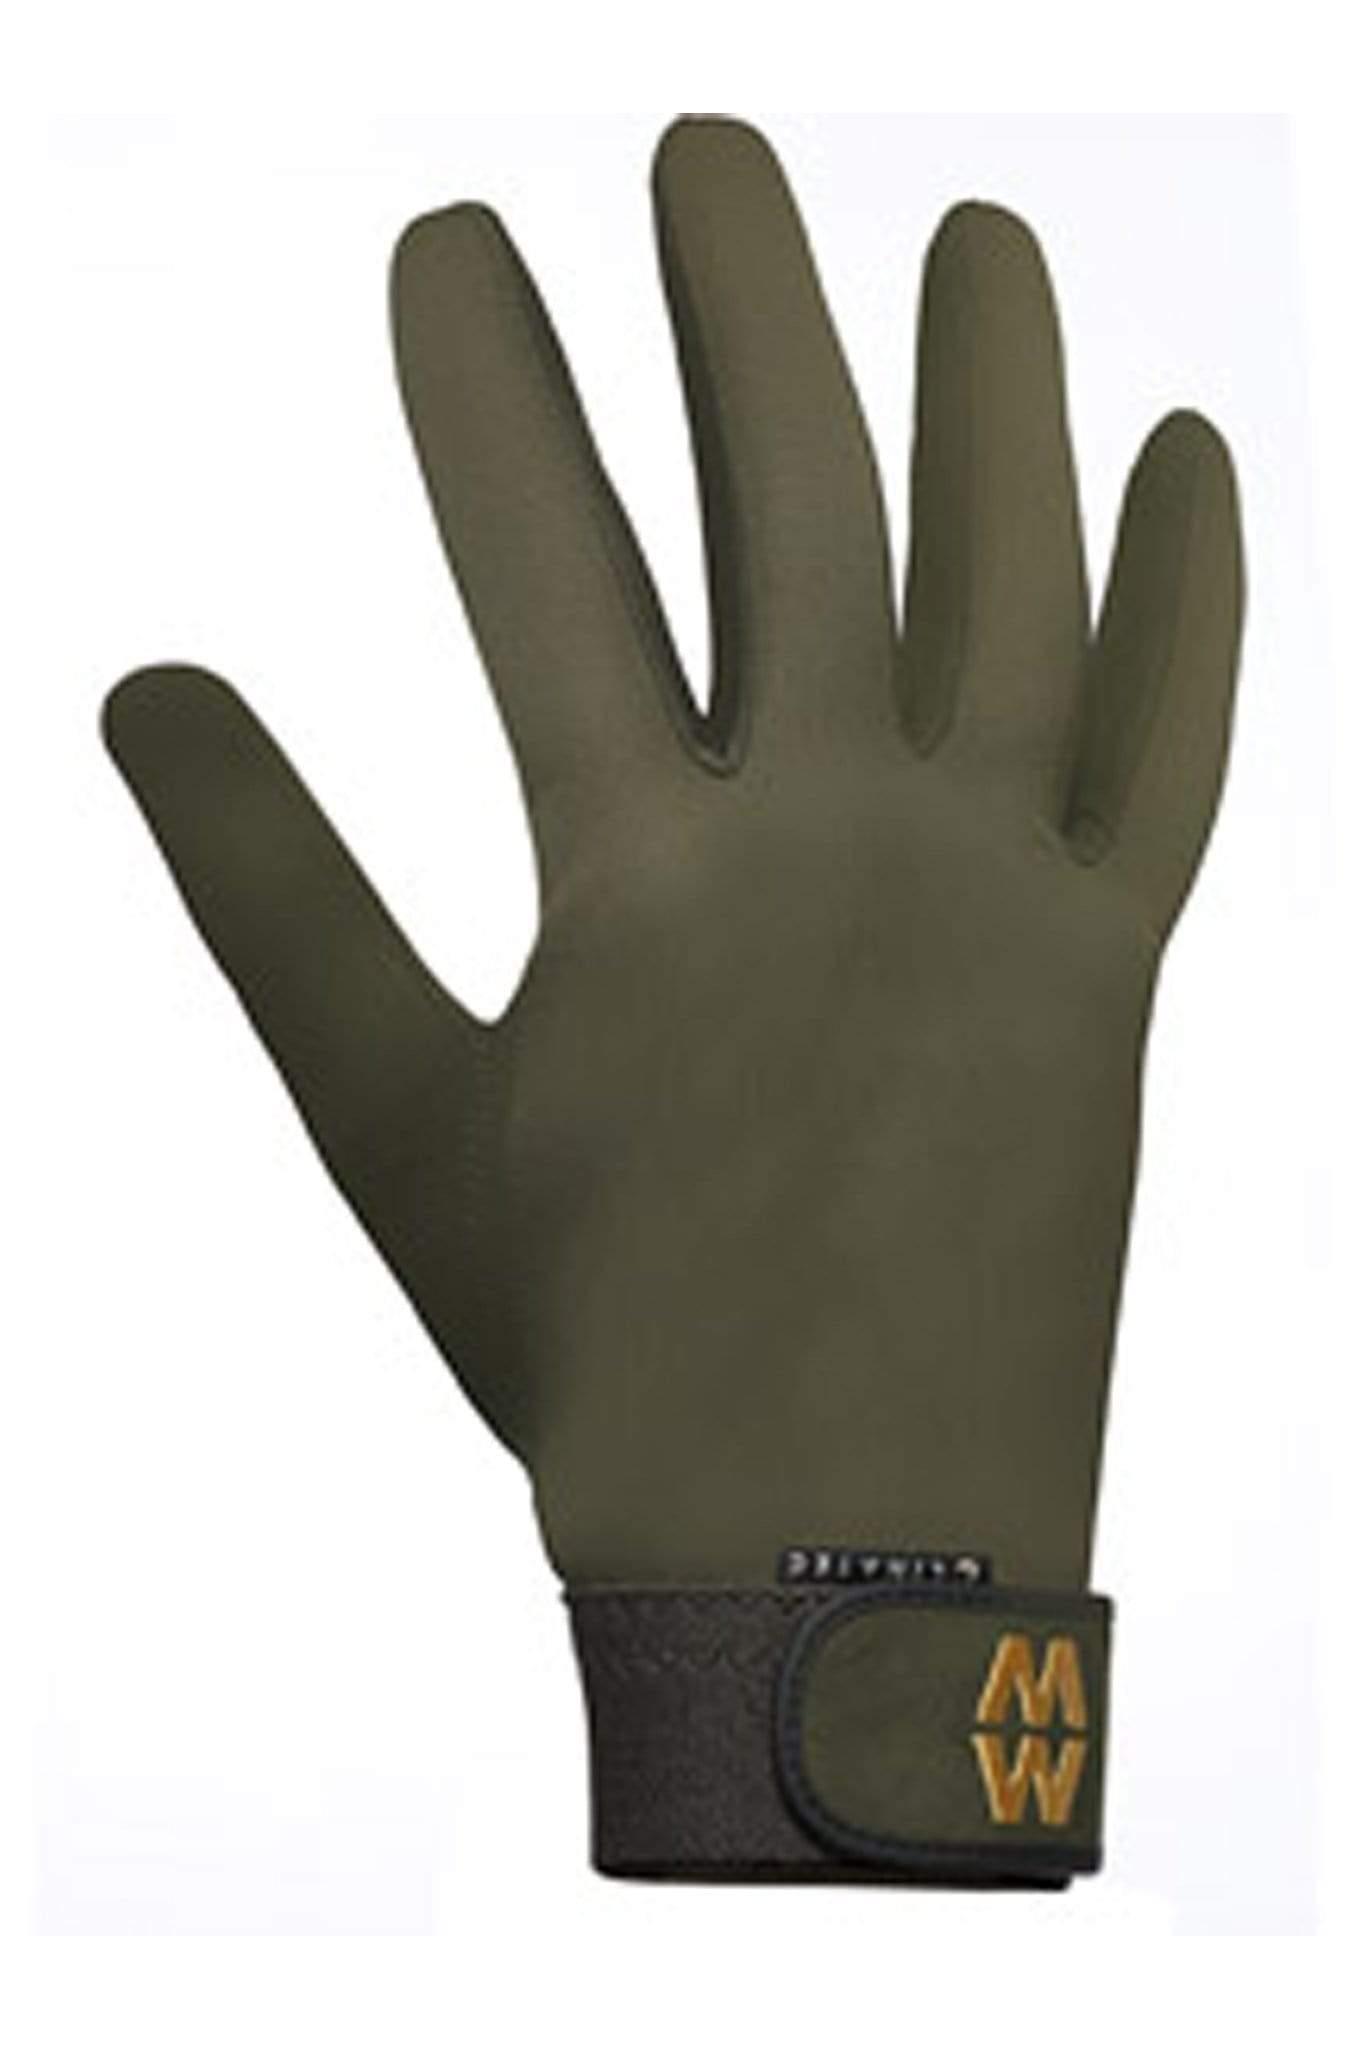 MacWet Gloves MacWet Climatec Sports Glove Long Cuff Green